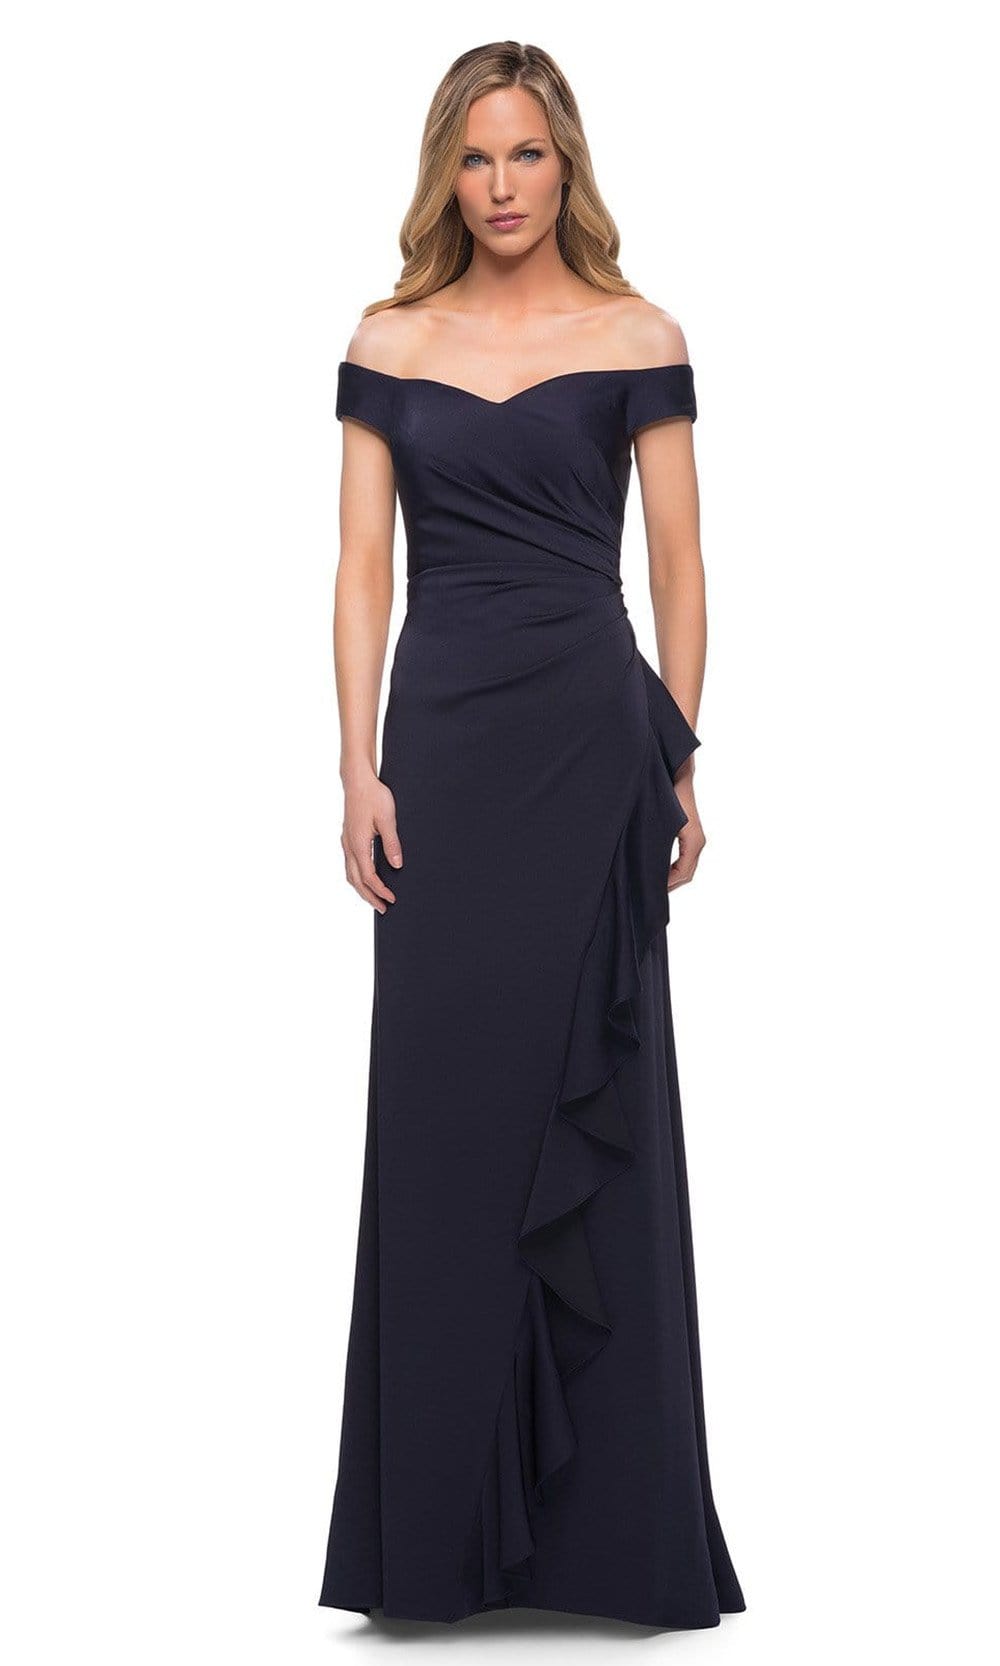 Image of La Femme - 29509 Ruched A-Line Evening Dress